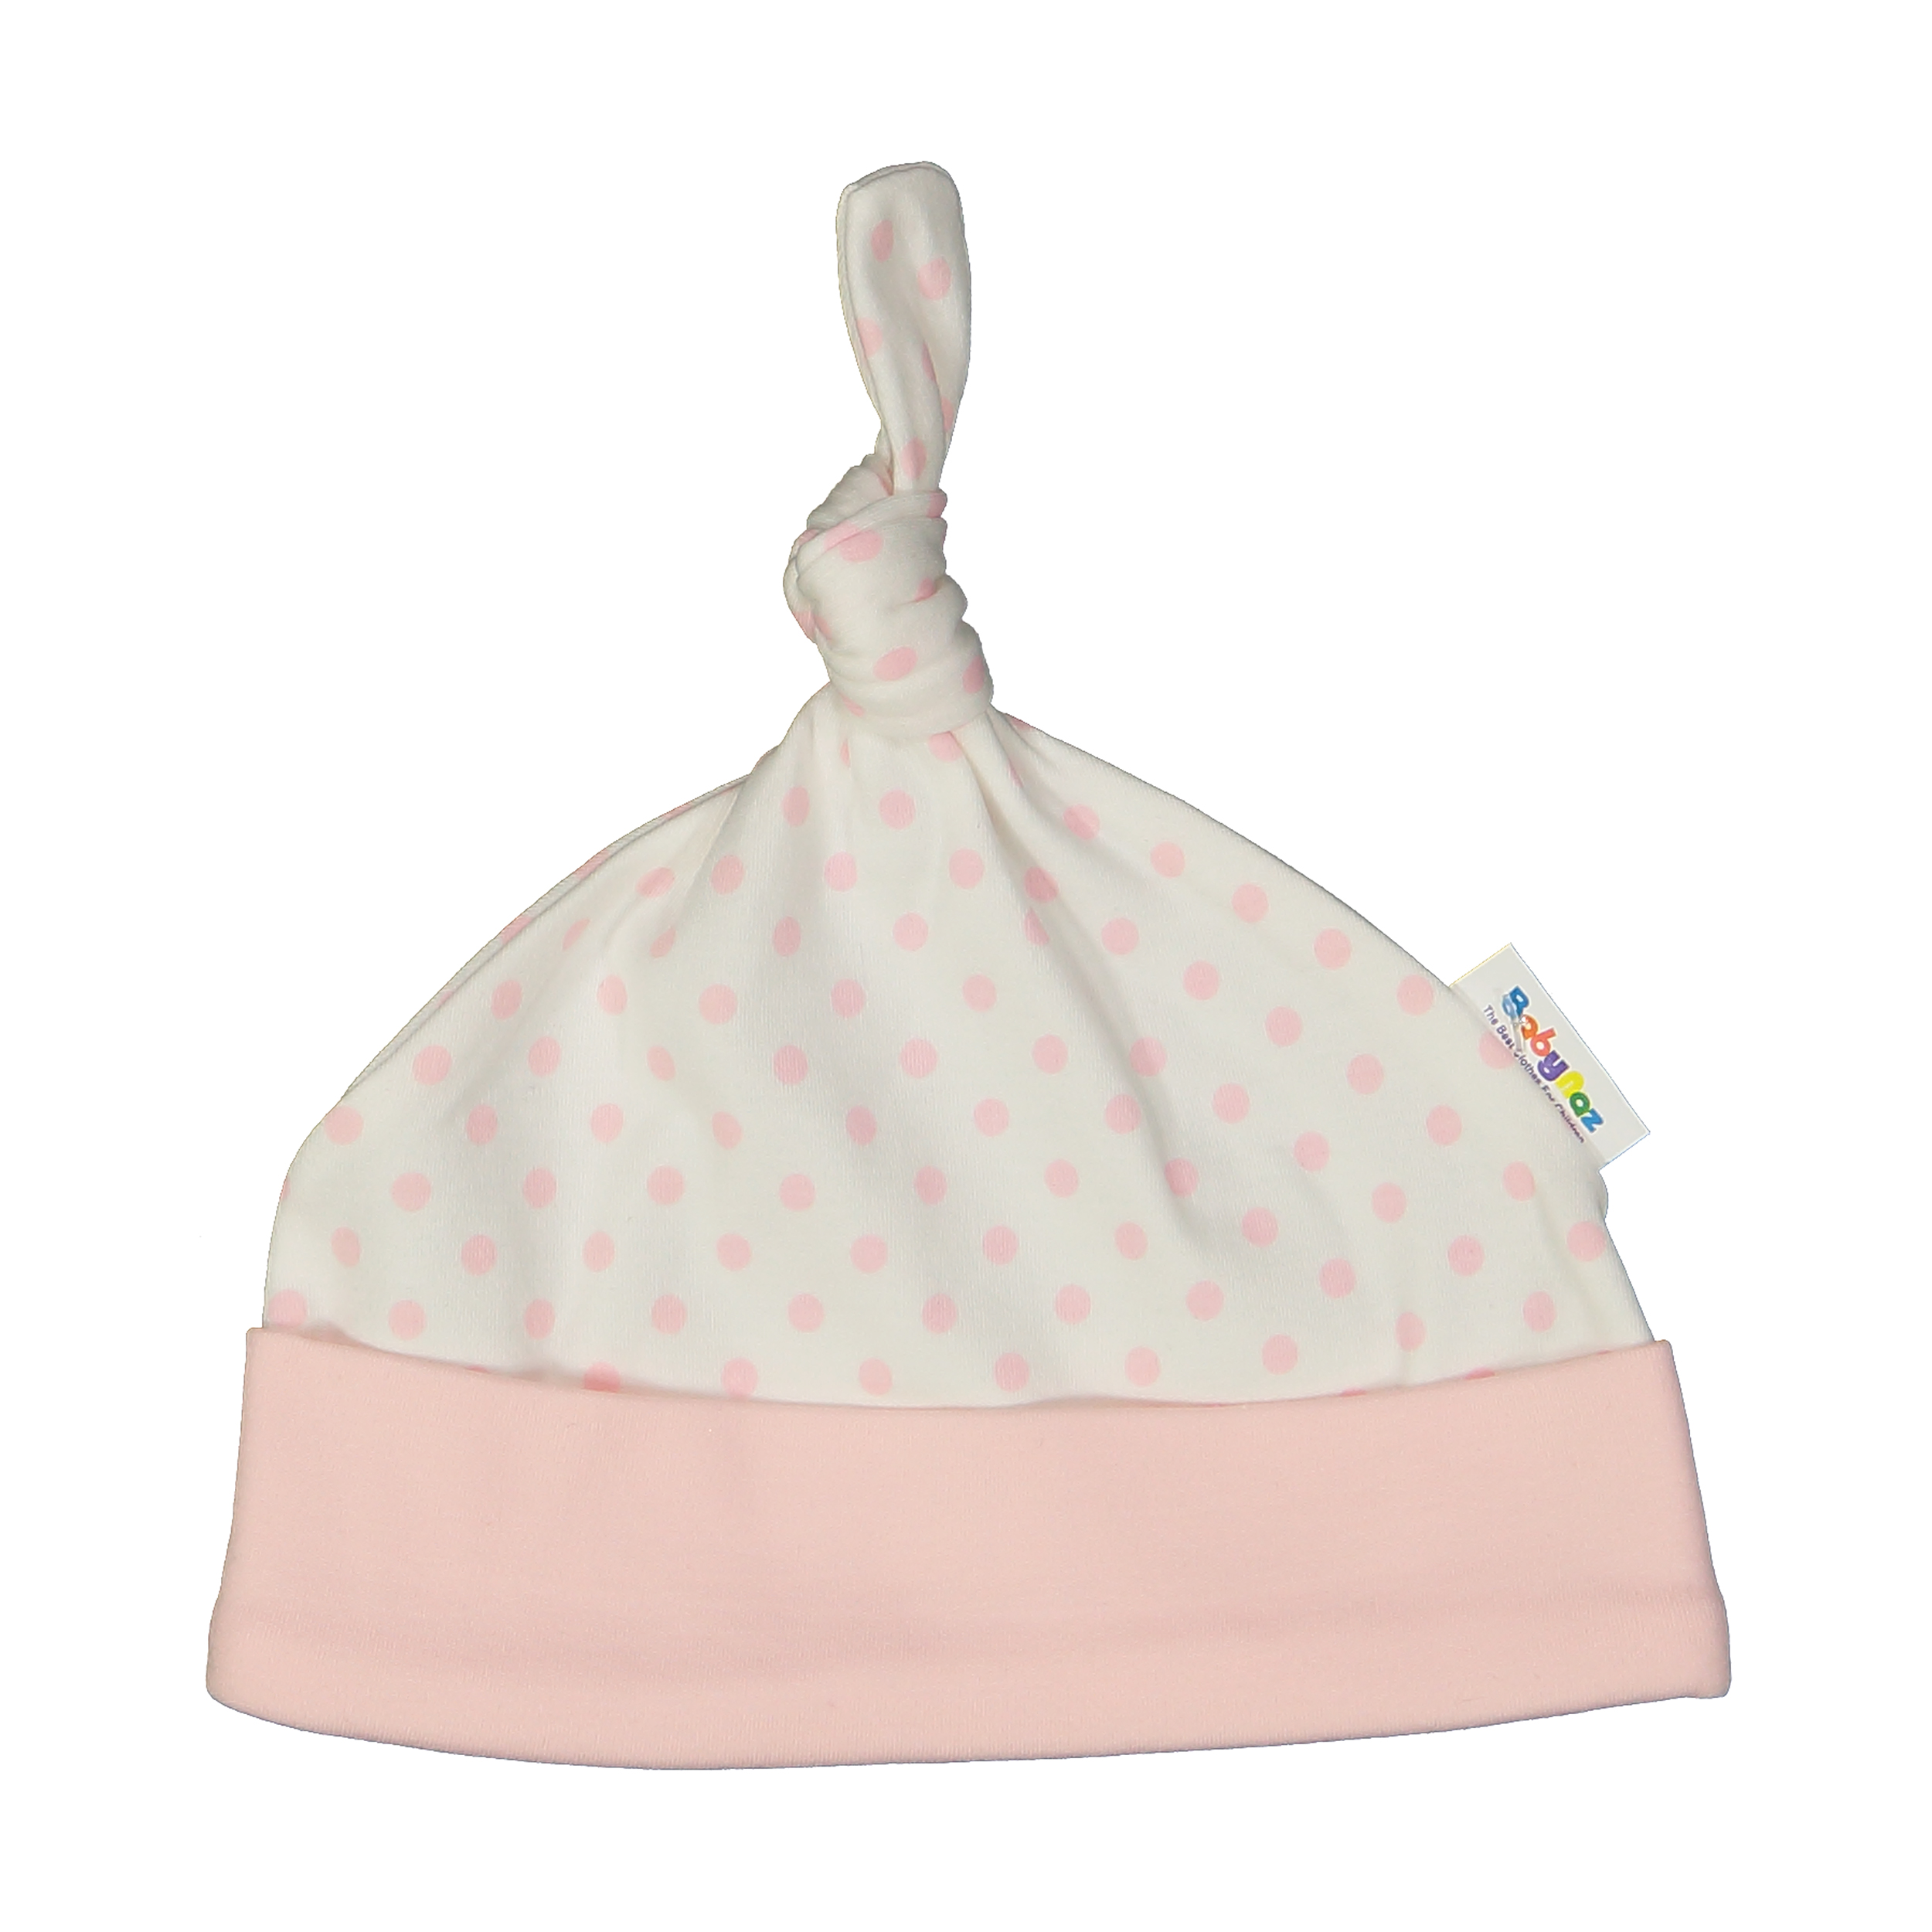 کلاه نوزادی دخترانه بی بی ناز مدل 1501481-0184 - سفید صورتی - 1